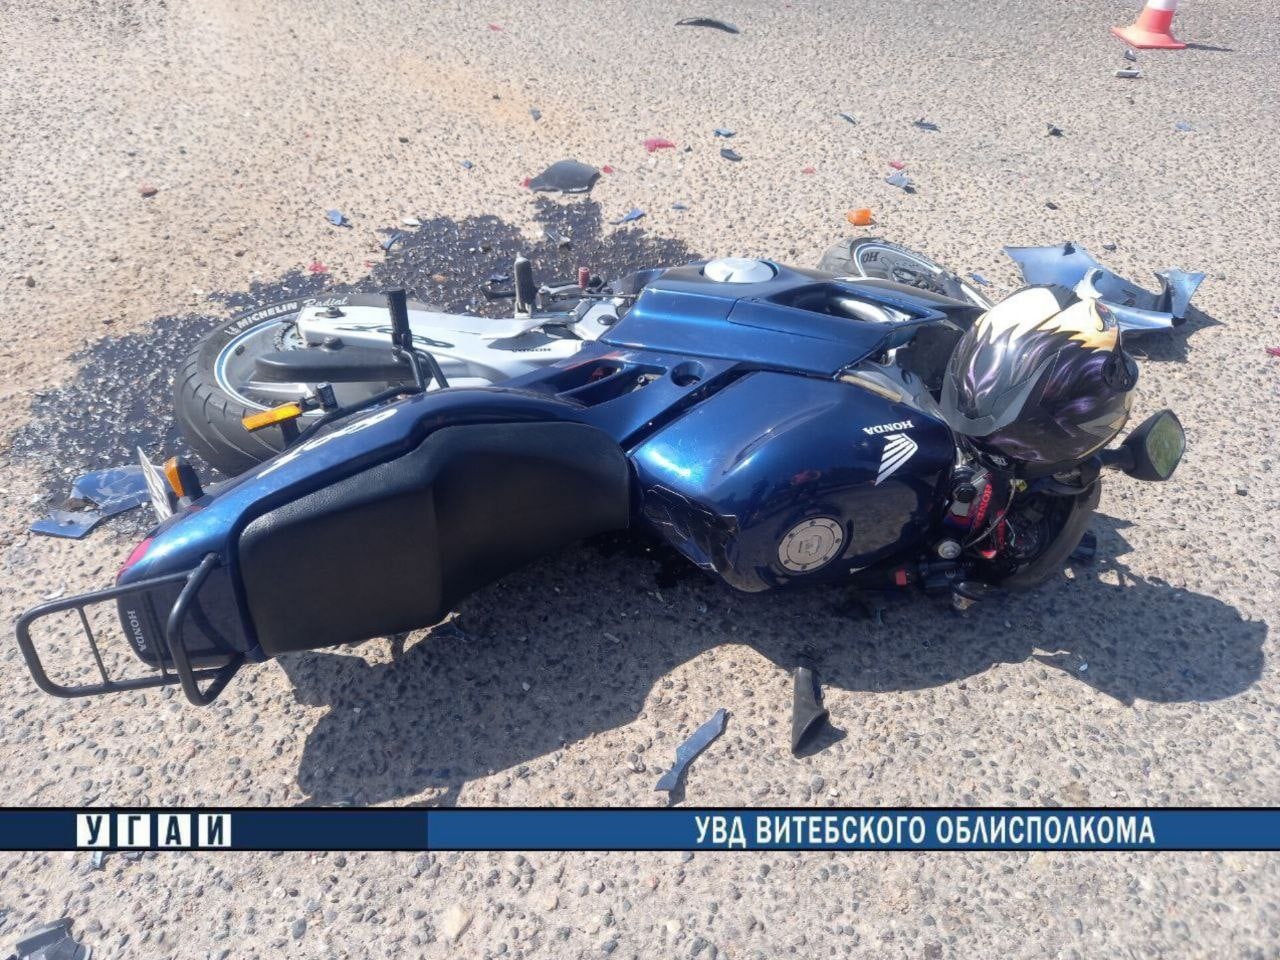 Два парня на мотоцикле вылетели на встречку и врезались в авто в Лепельском районе, они в больнице